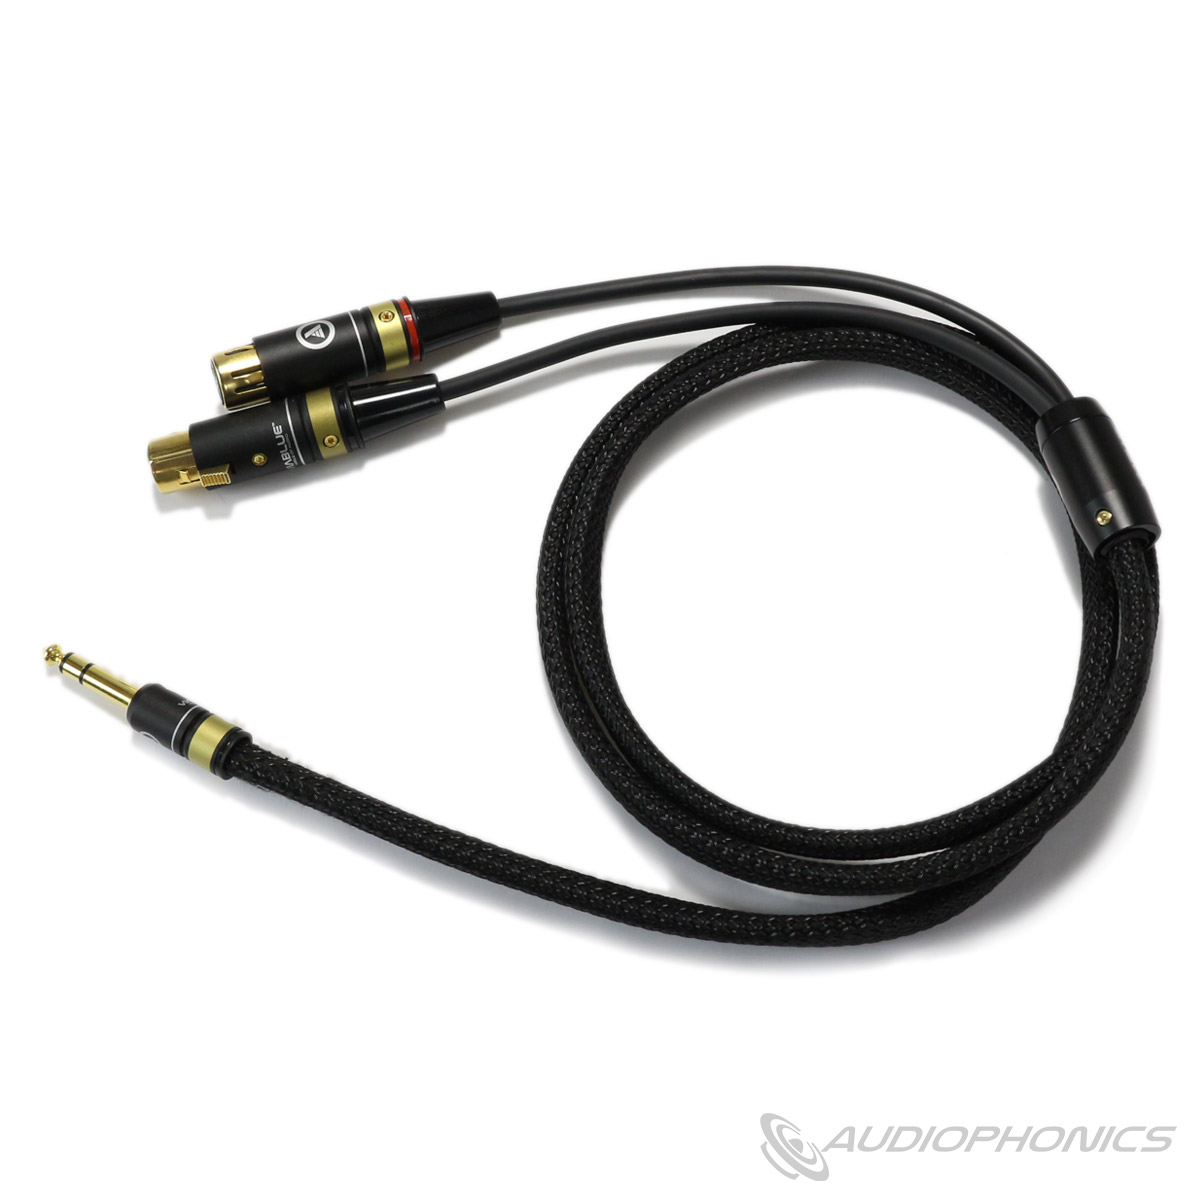 Audiophonics cable jack 6.3 vers double XLR femelles